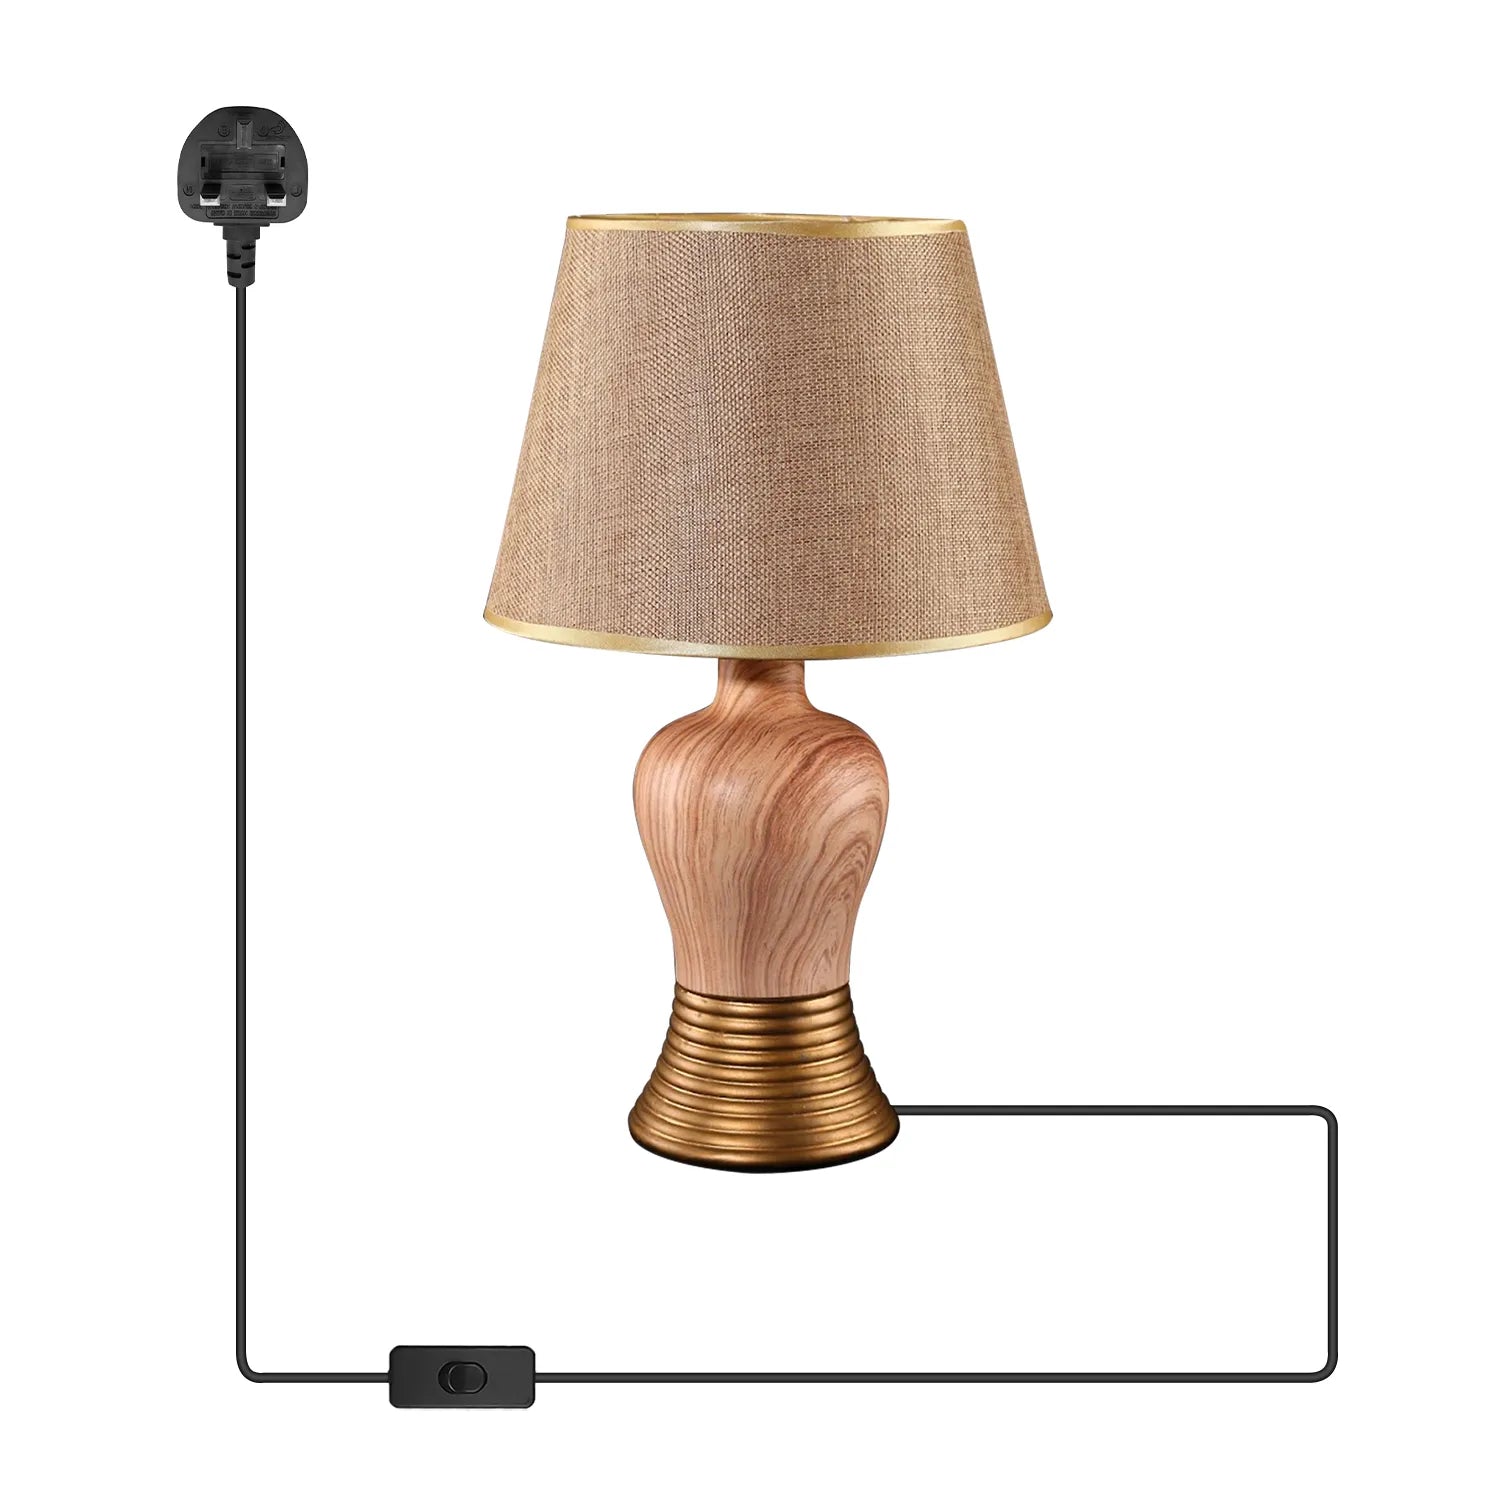 Vase Creative shape Ceramic Plugin Bedside Table Lamp Light ~5162